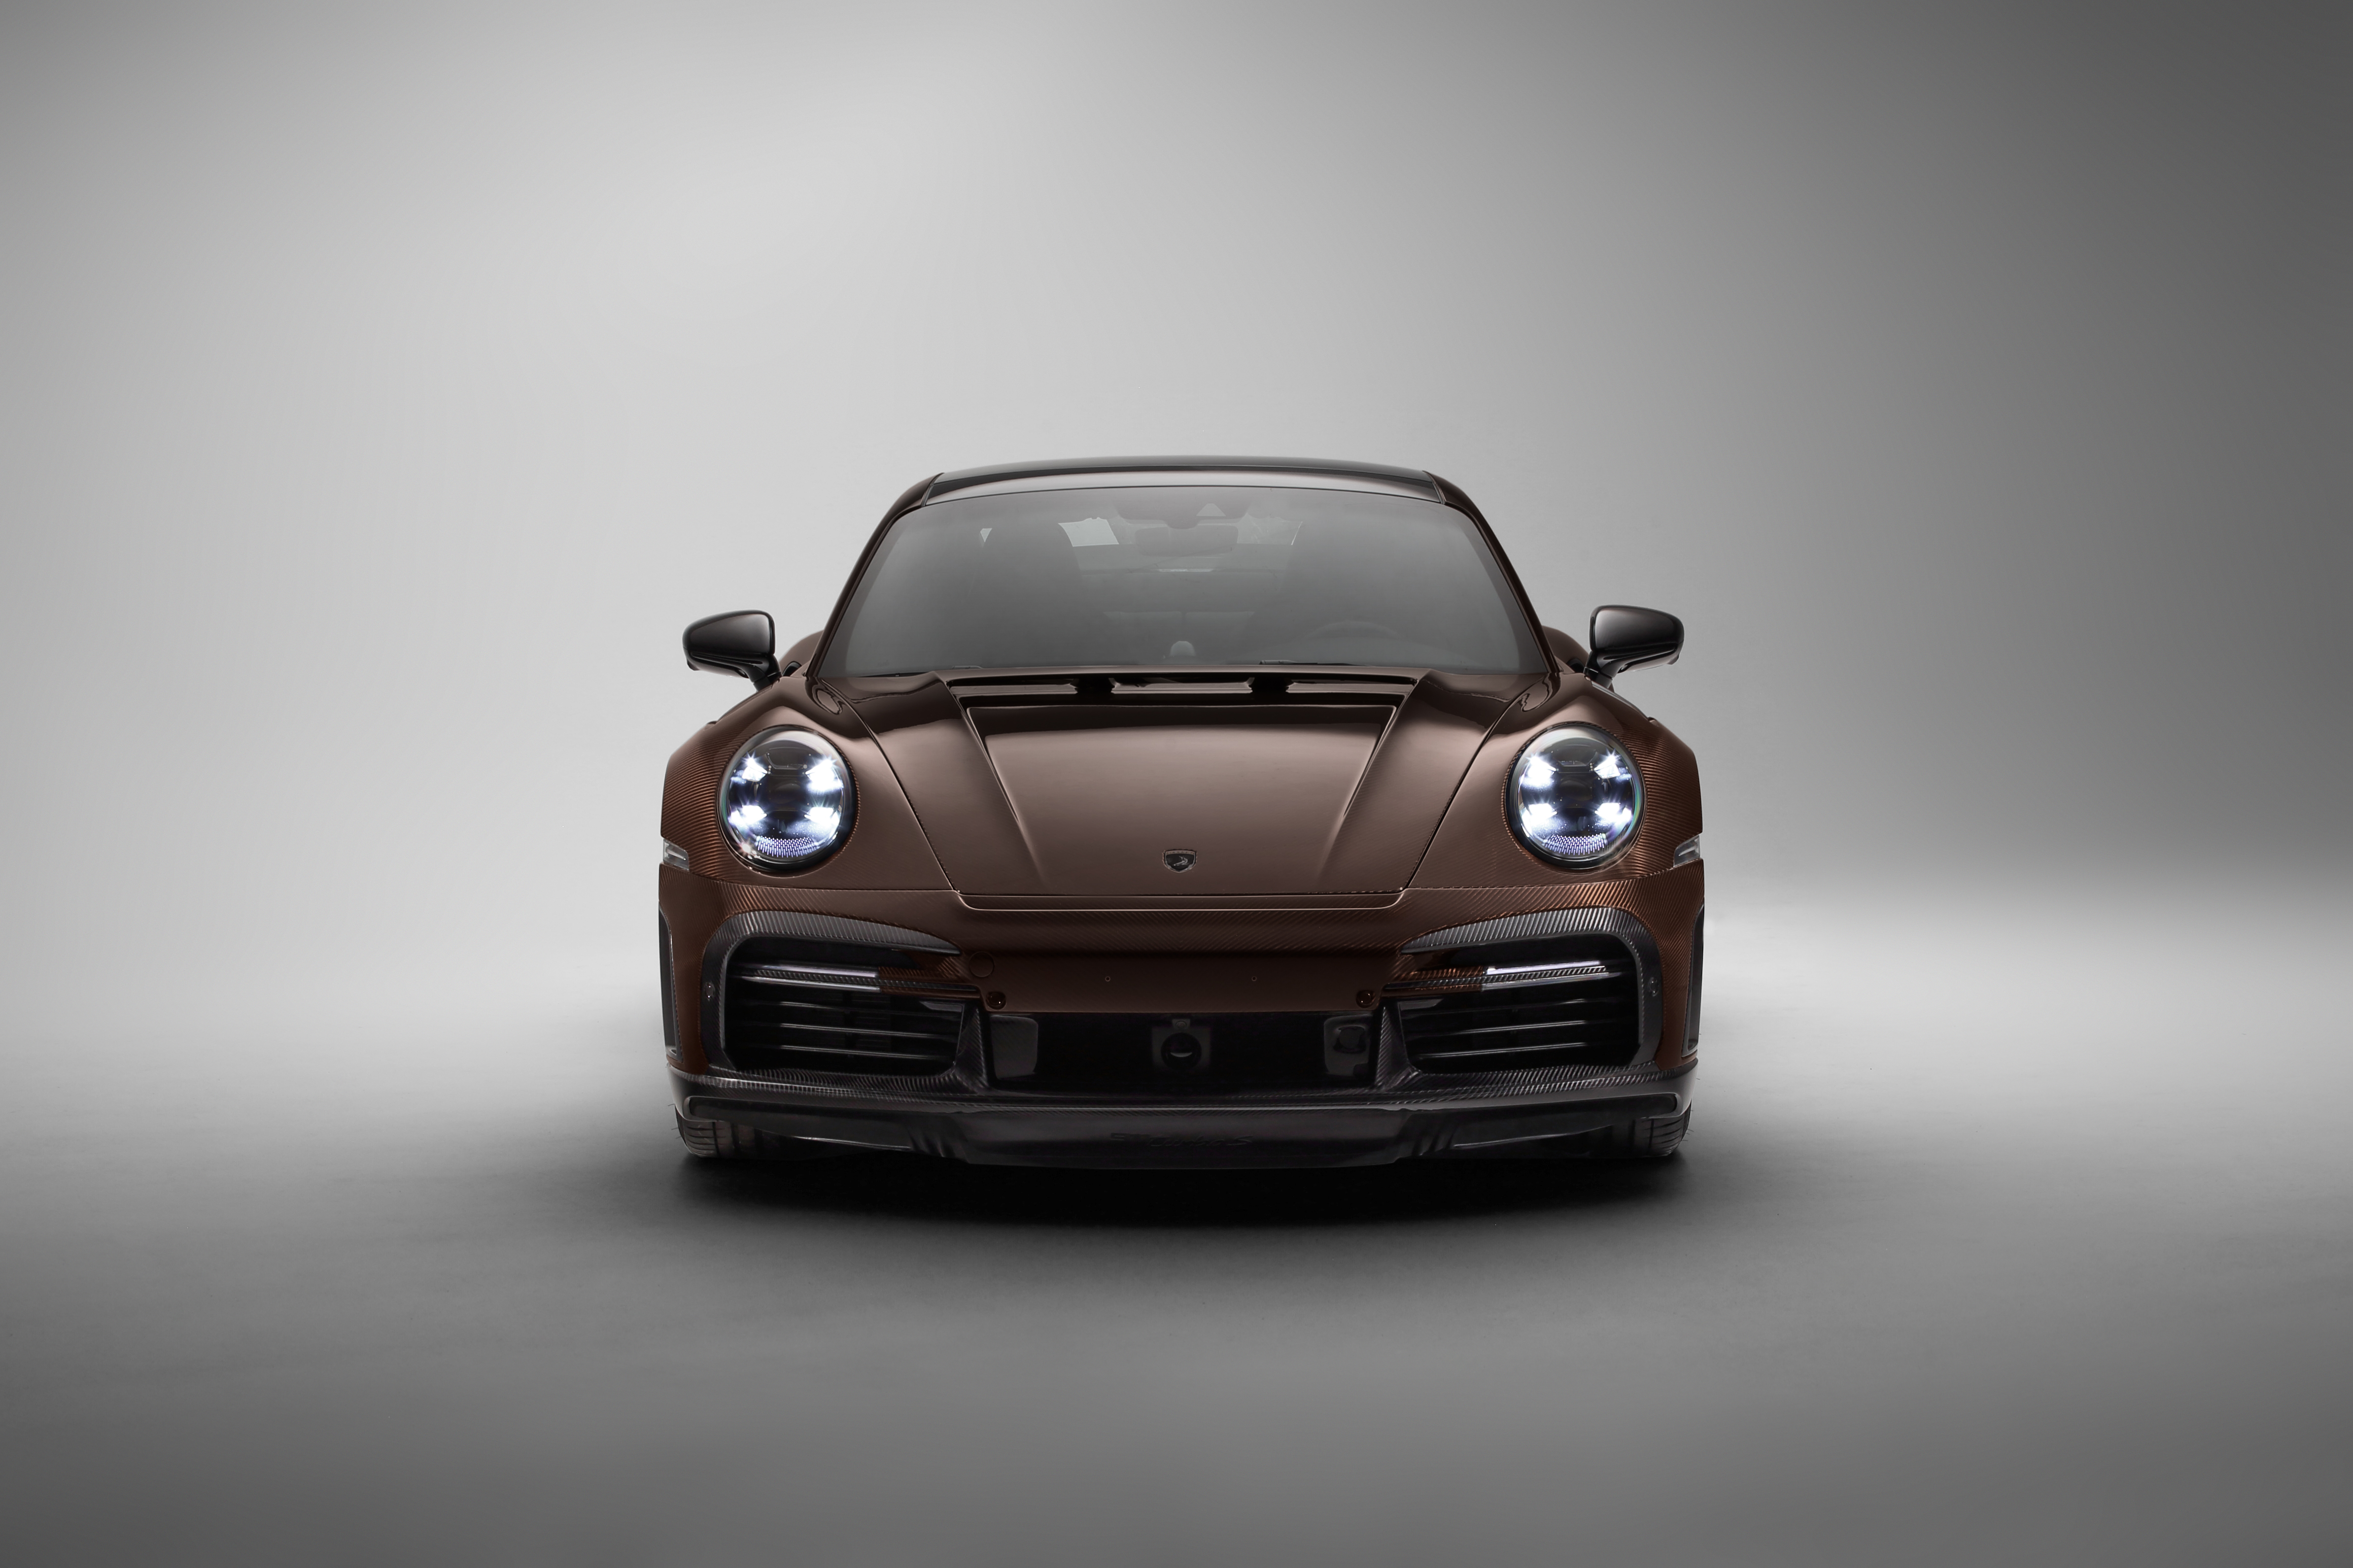 Descarga gratuita de fondo de pantalla para móvil de Porsche, Vehículos, Porsche 911 Turbo, Porsche 911 Turbo S Stinger Gtr Edición Carbono.